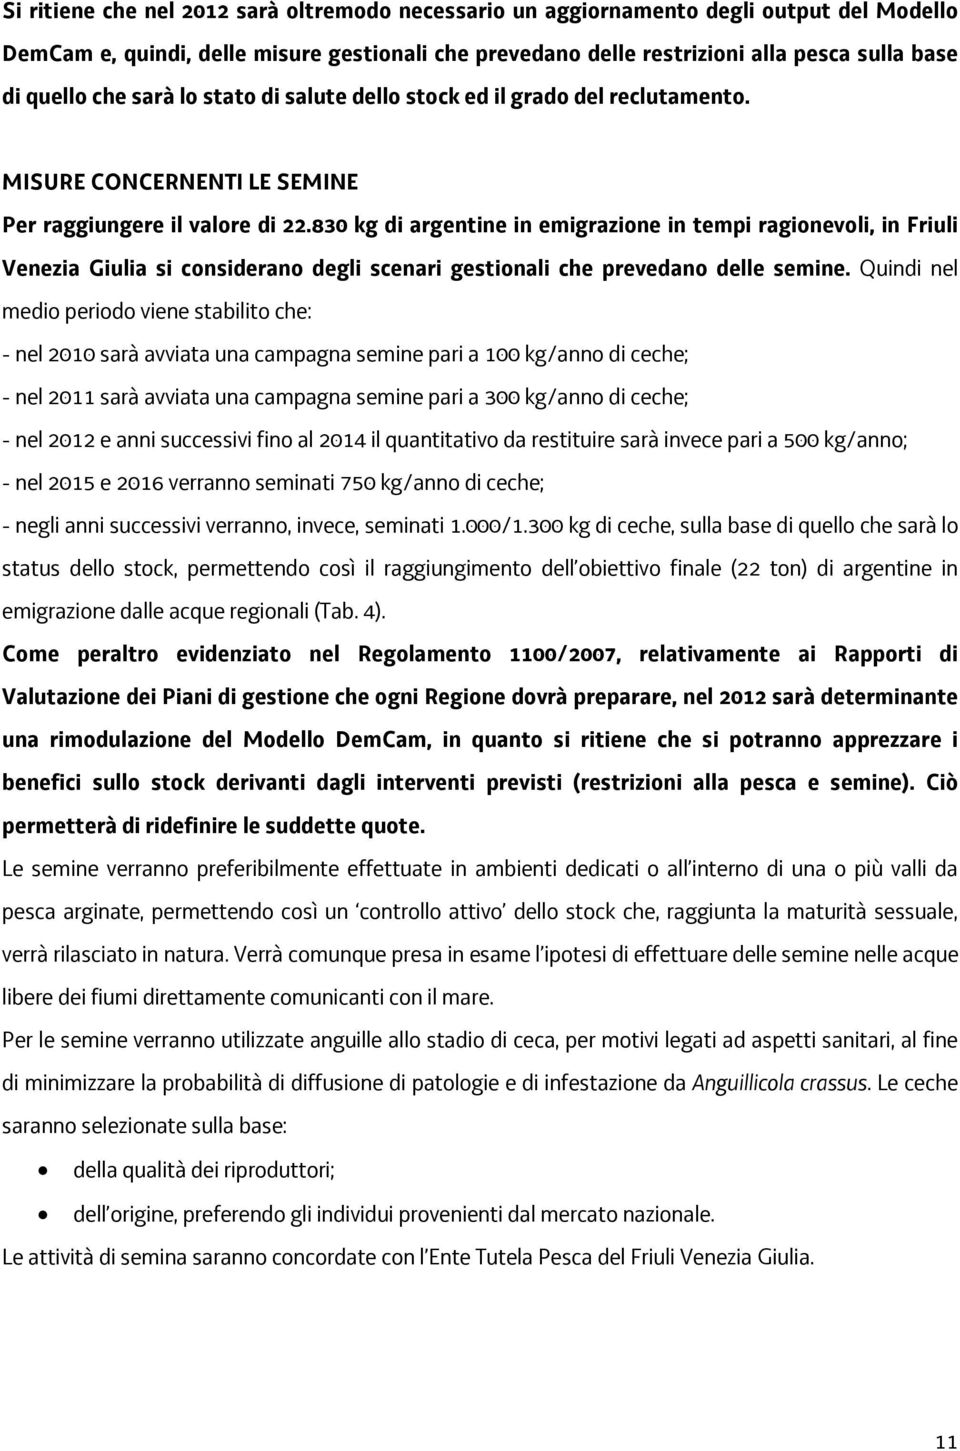 830 kg di argentine in emigrazione in tempi ragionevoli, in Friuli Venezia Giulia si considerano degli scenari gestionali che prevedano delle semine.